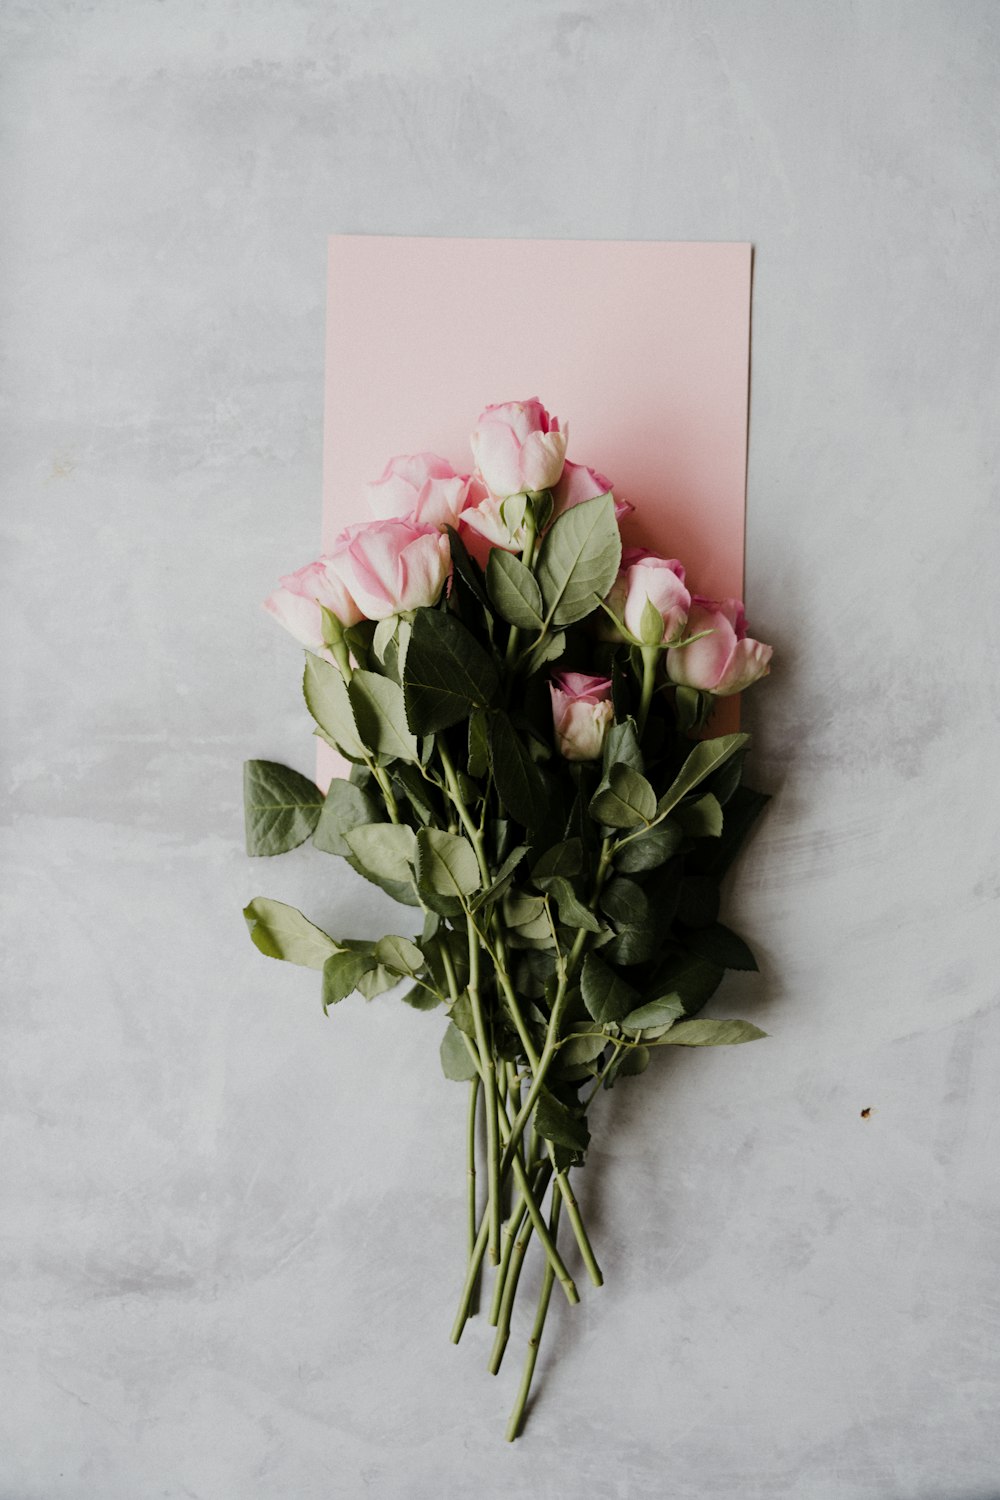 rosas cor-de-rosa na parede branca